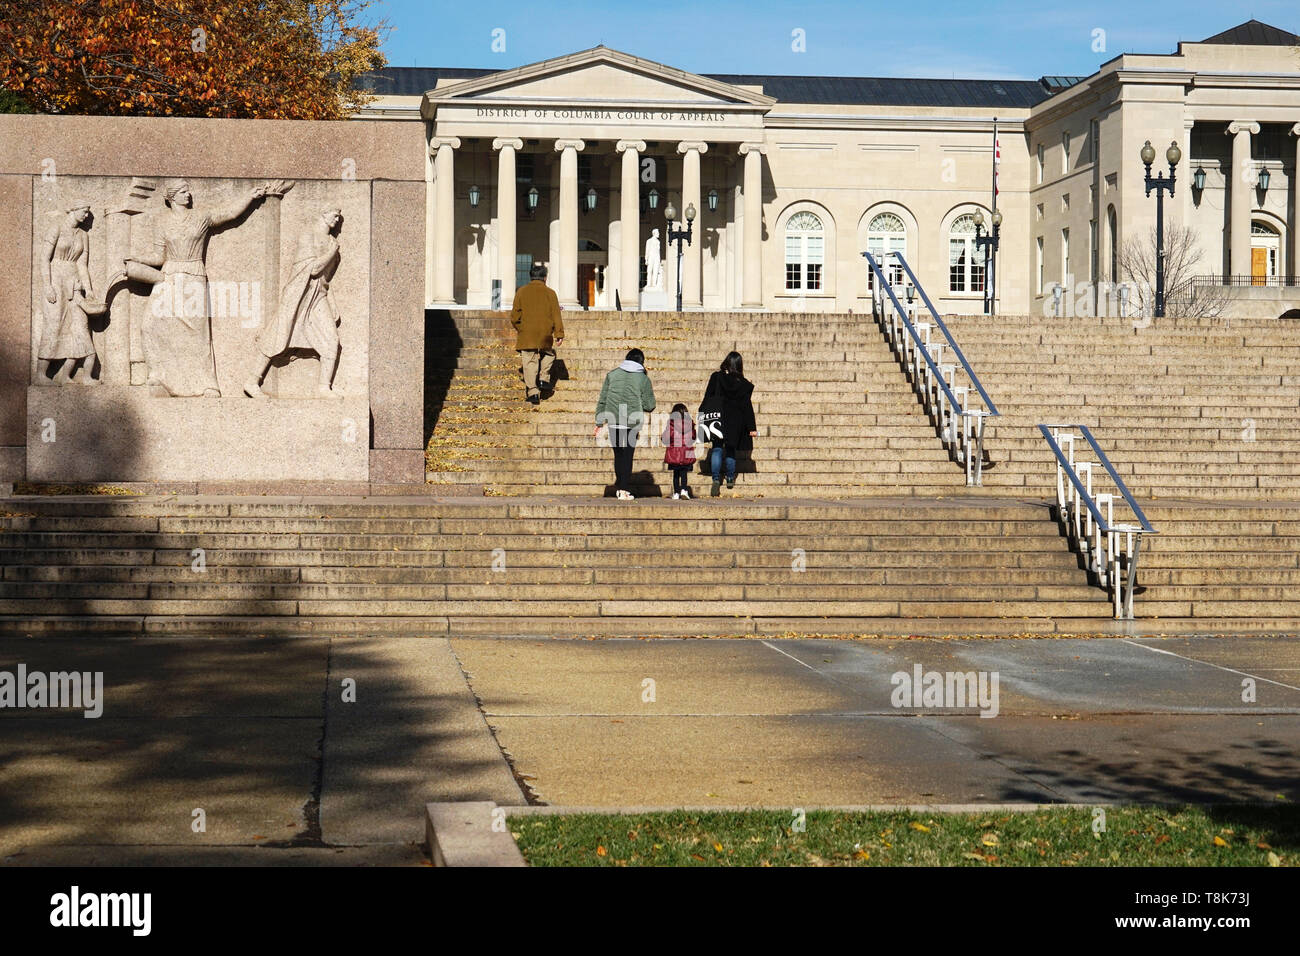 Distretto di Columbia corte di appello di magistratura Square. Washington D.C.USA Foto Stock